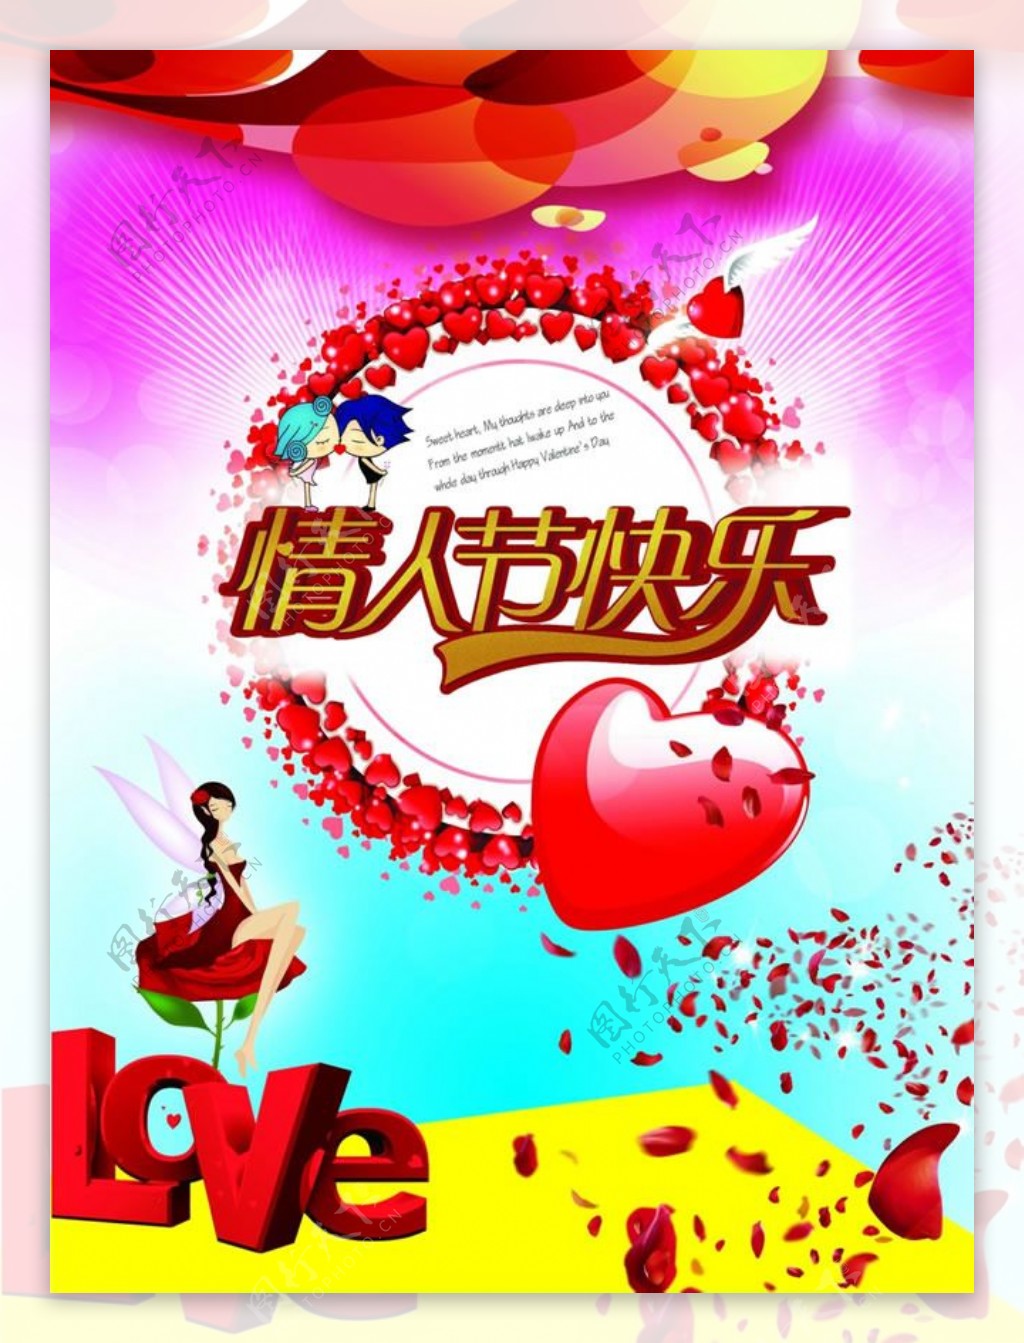 情人节快乐卡通海报设计psd素材